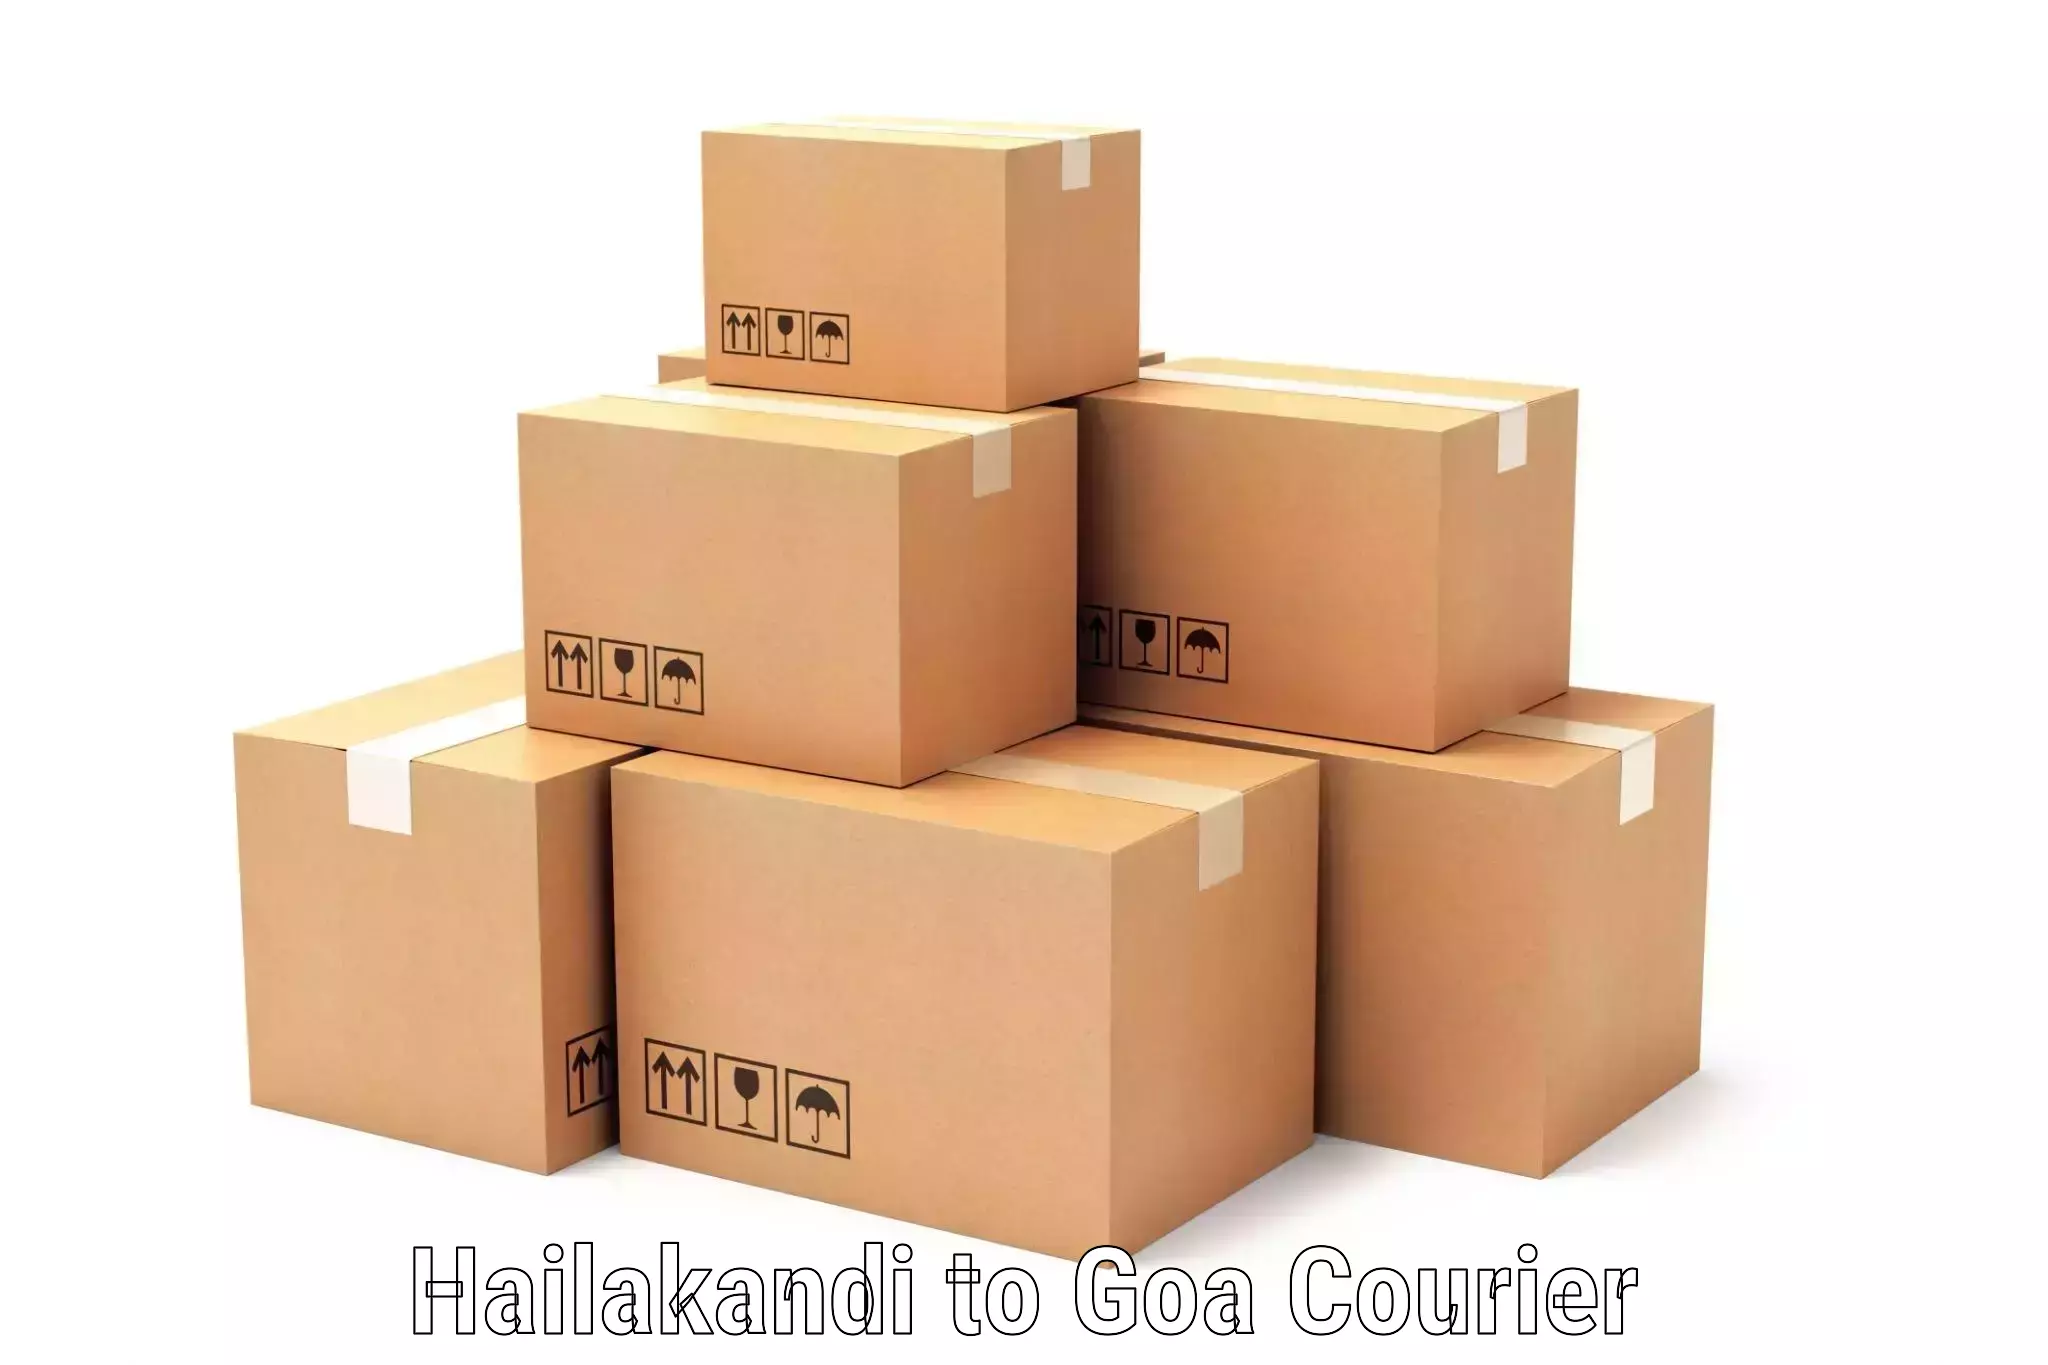 Efficient parcel tracking Hailakandi to Bardez